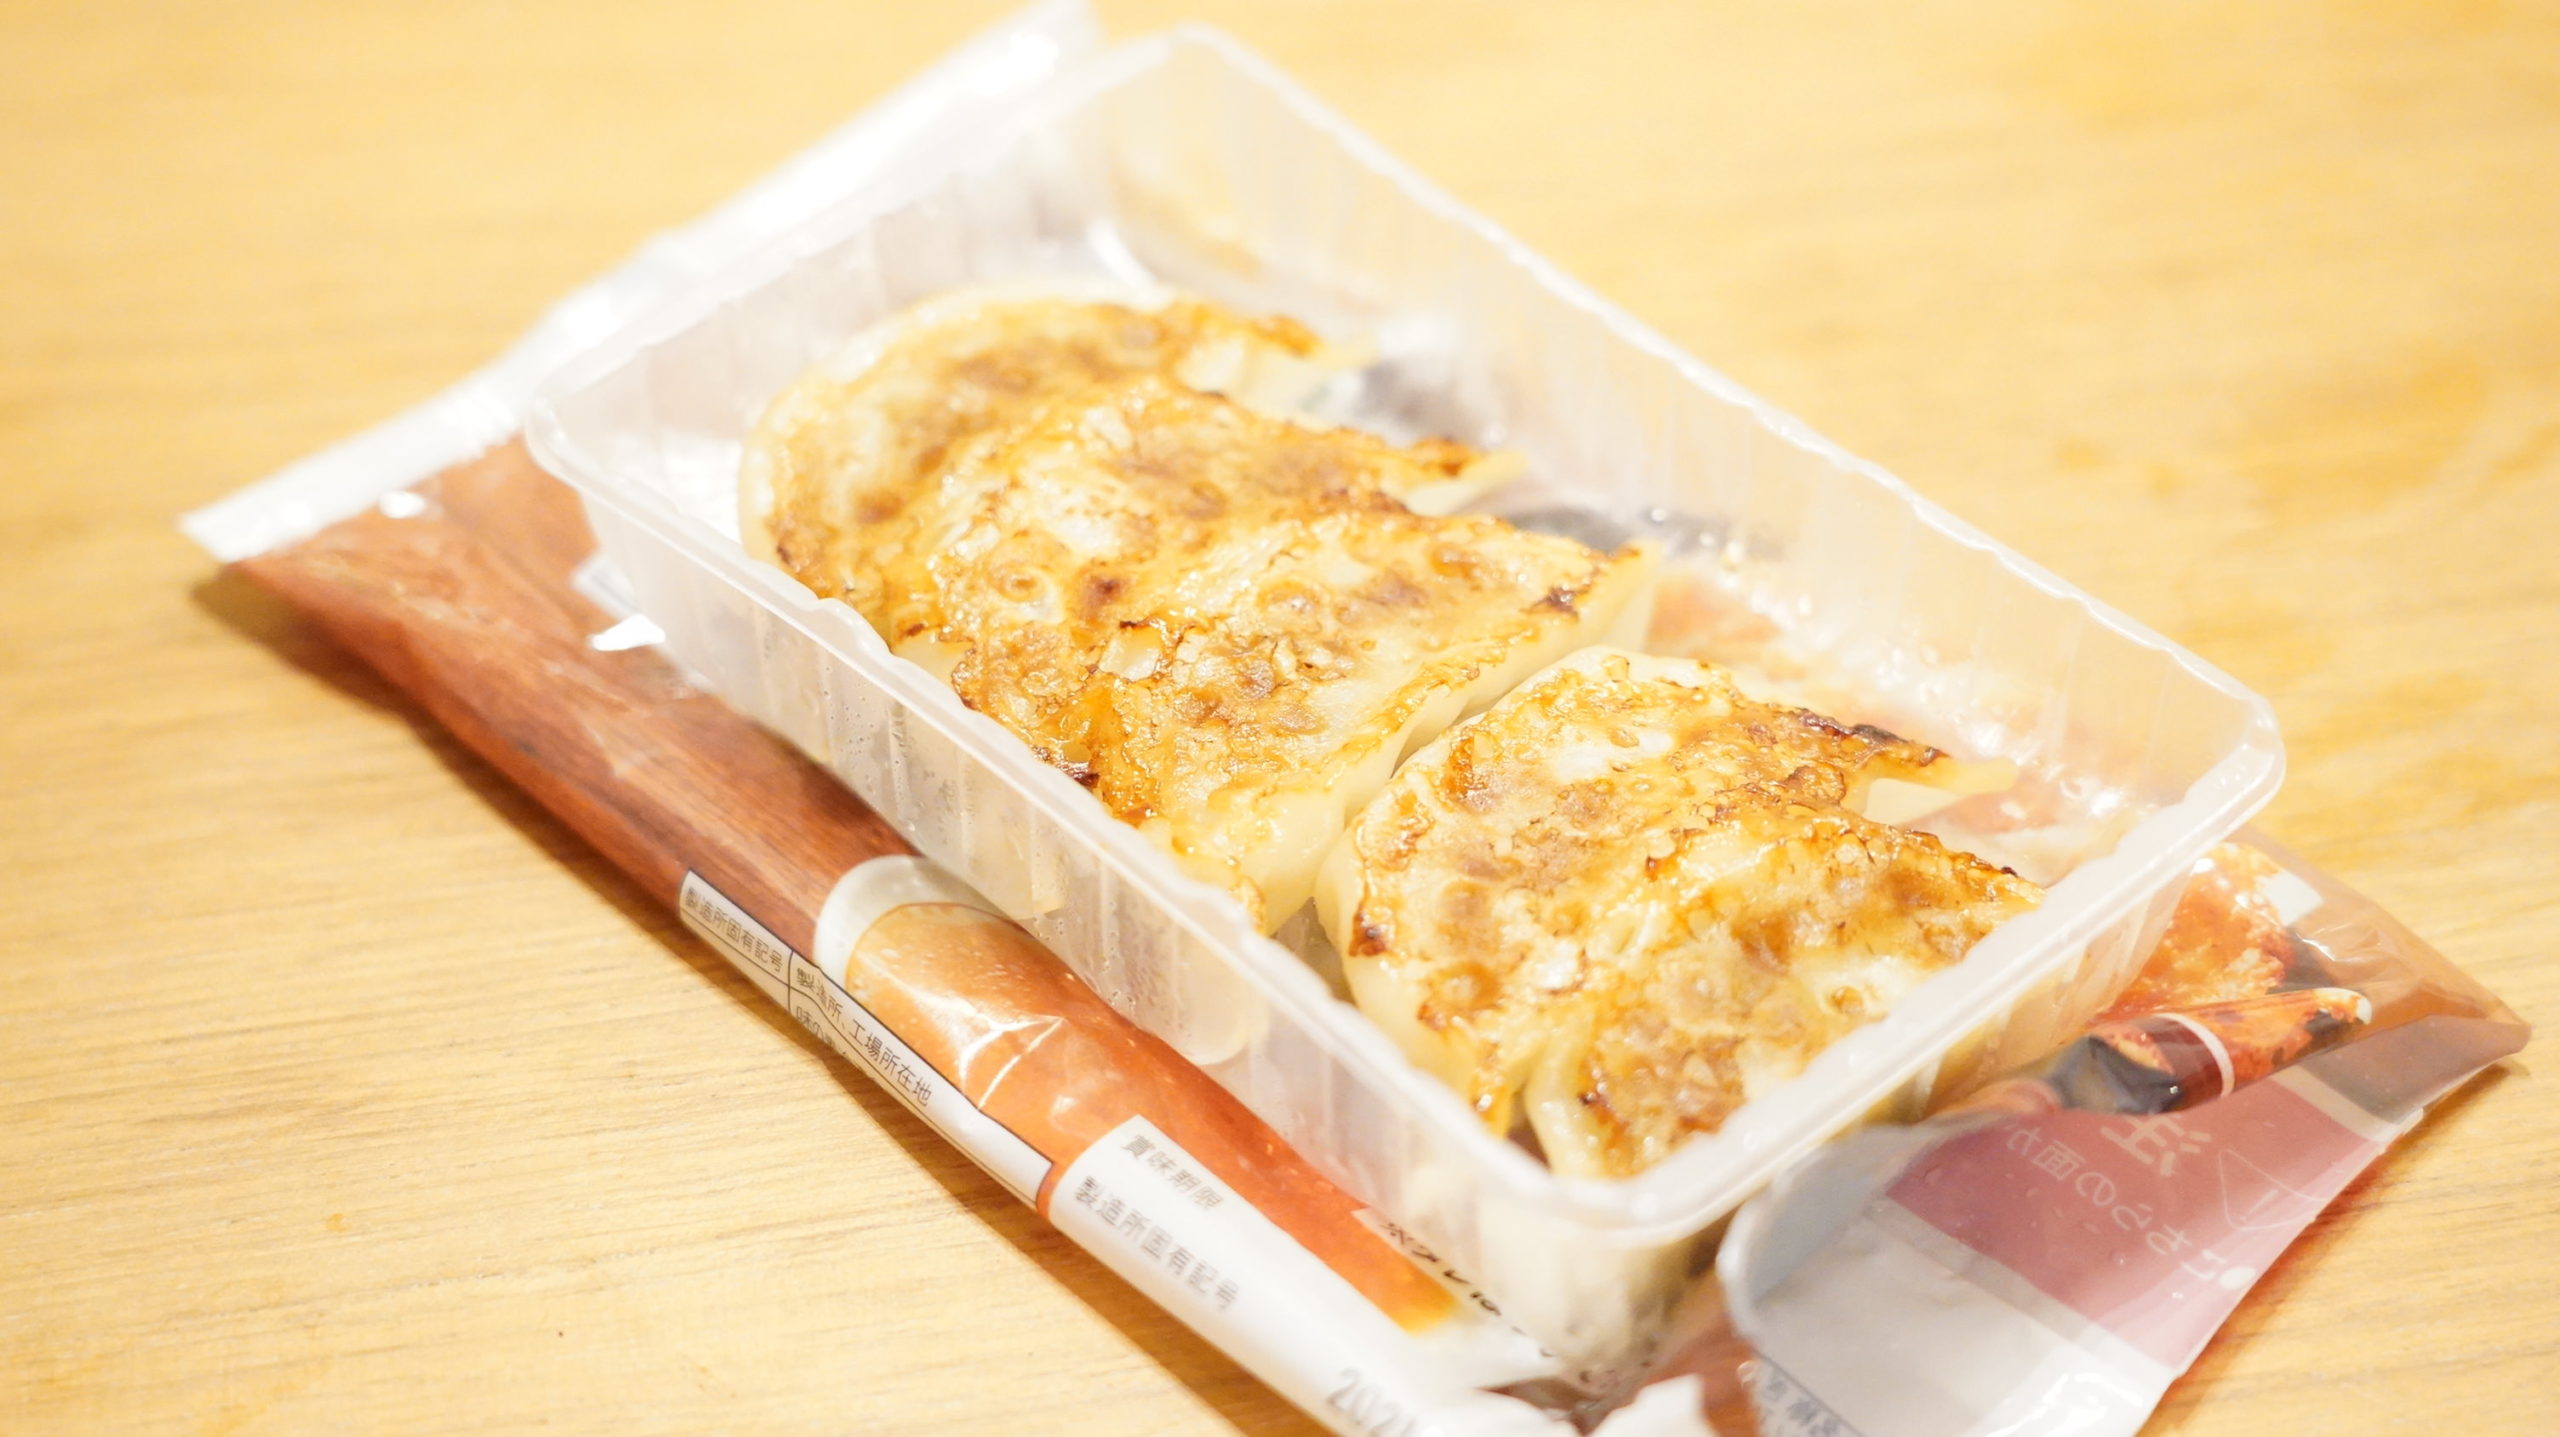 千葉県のセブン限定で売られている「国産の野菜たっぷり焼き餃子」のギョーザの写真